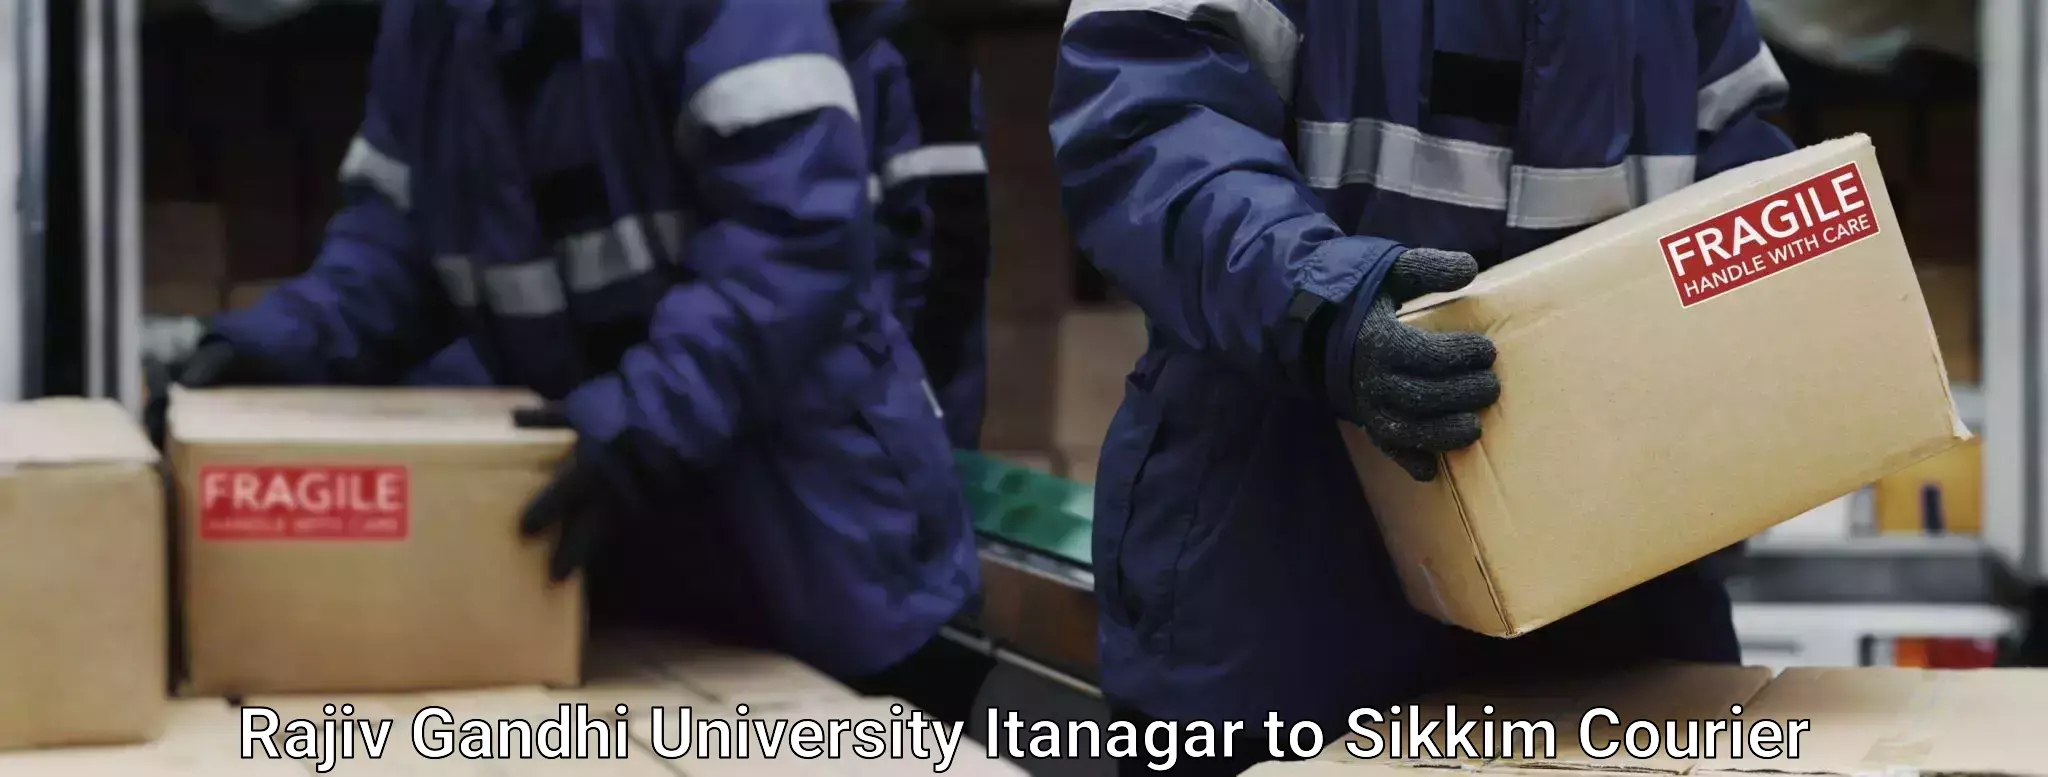 Baggage transport management Rajiv Gandhi University Itanagar to Mangan